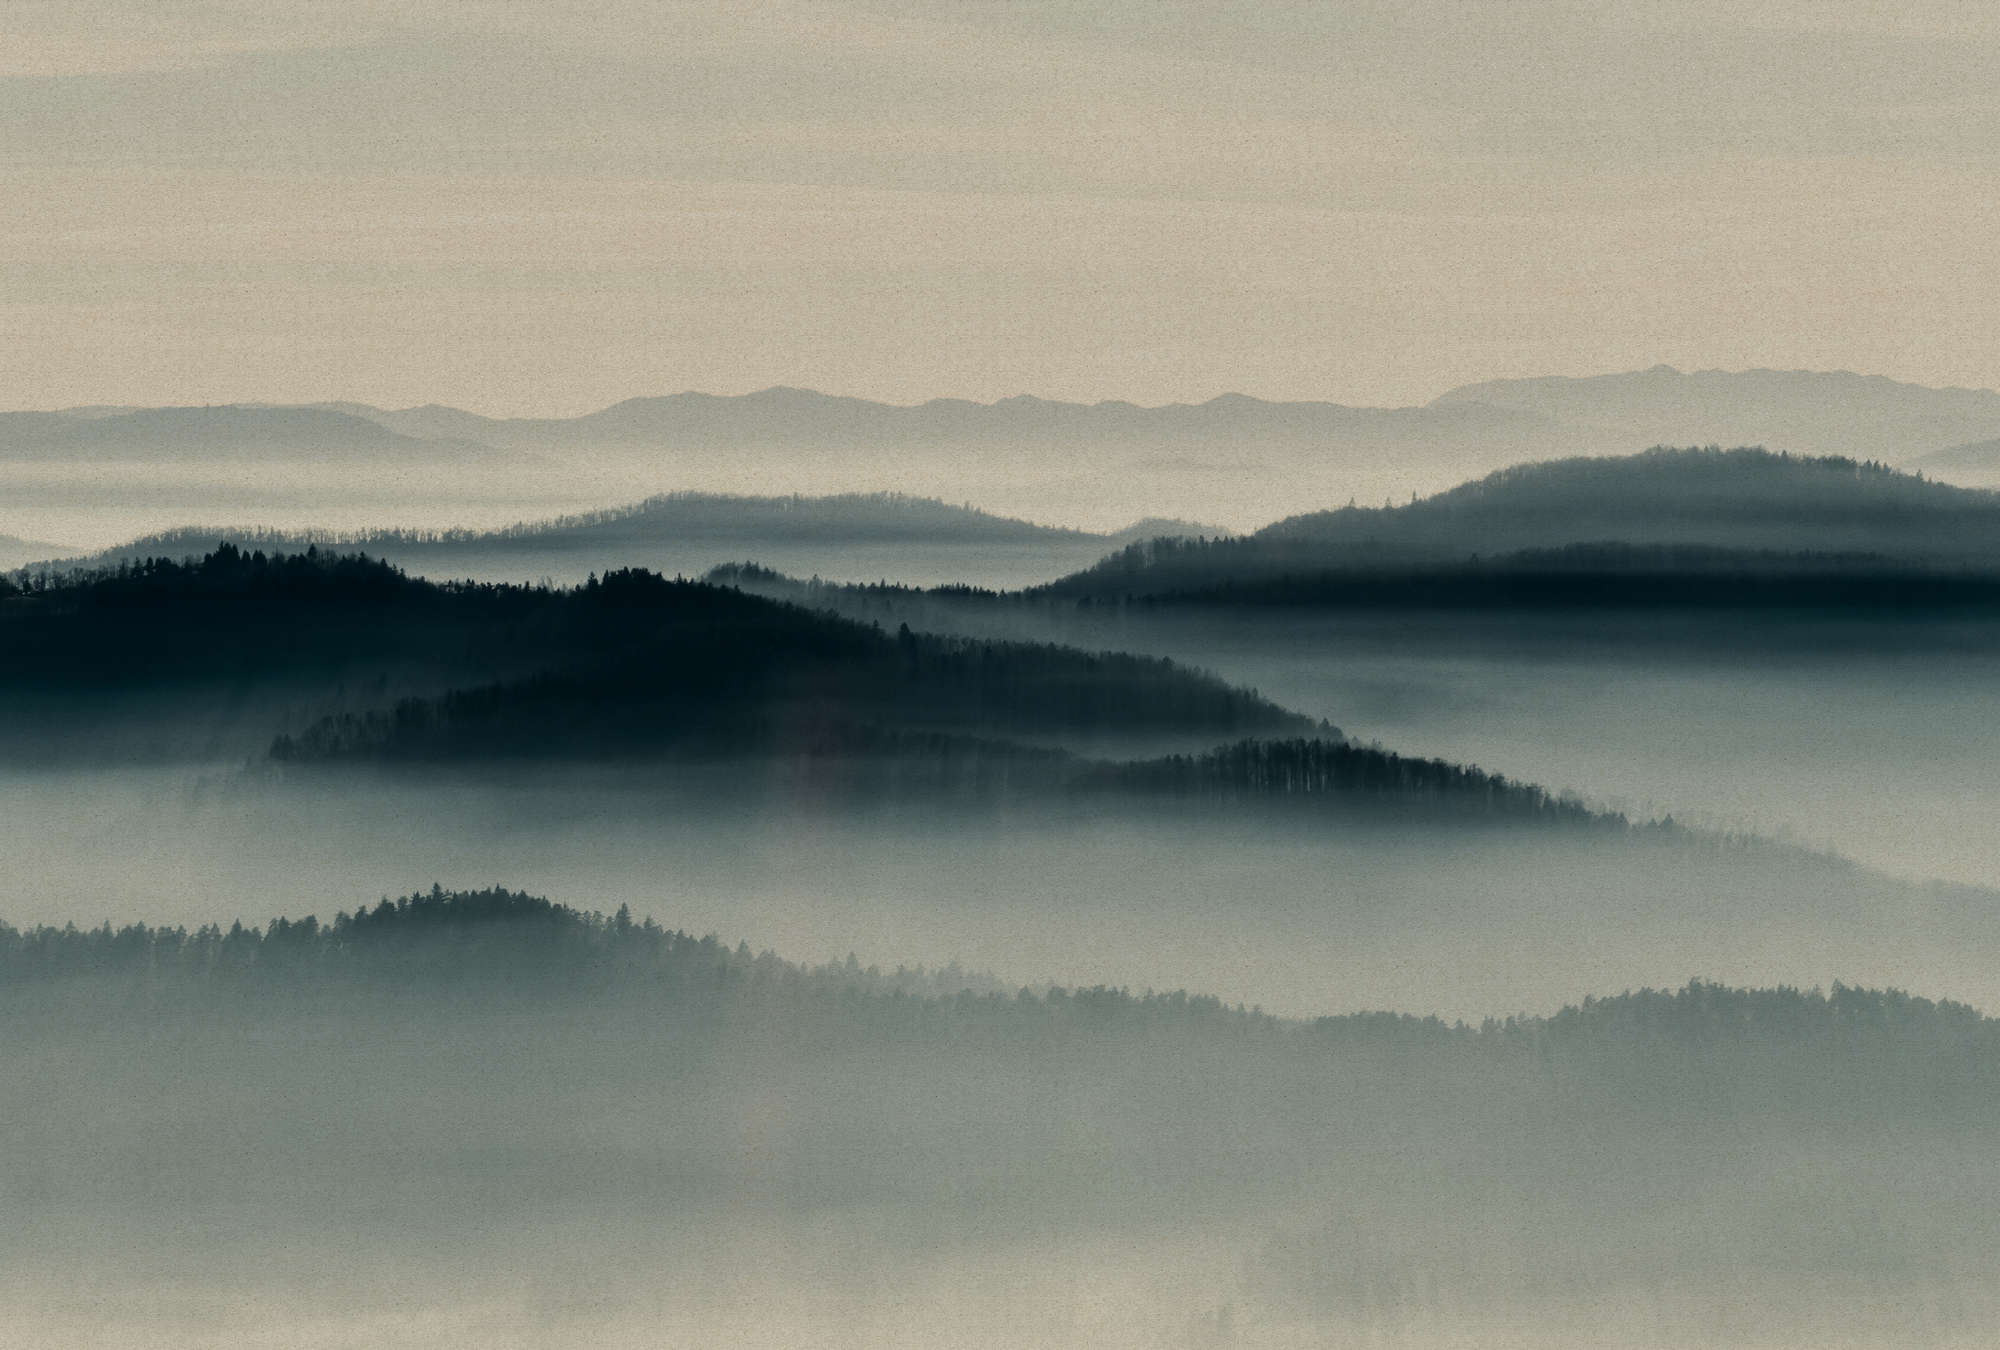             Horizon 1 - Fototapete mit Nebel-Landschaft, Natur Sky Line in Pappe Struktur – Beige, Blau | Mattes Glattvlies
        